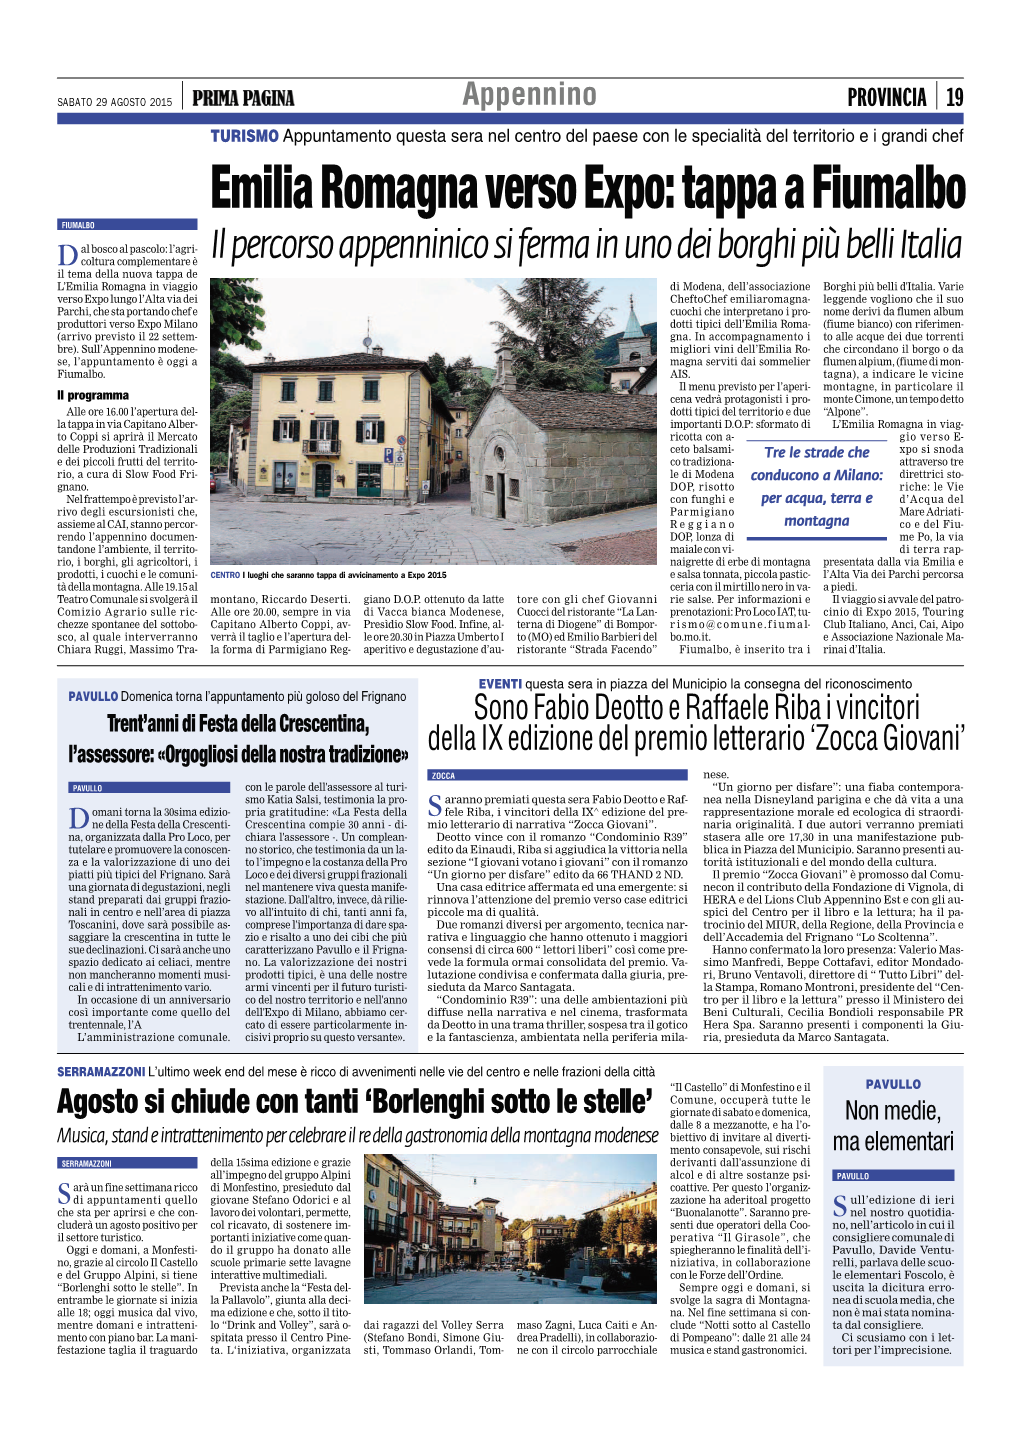 Emilia Romagna Verso Expo: Tappa a Fiumalbo FIUMALBO